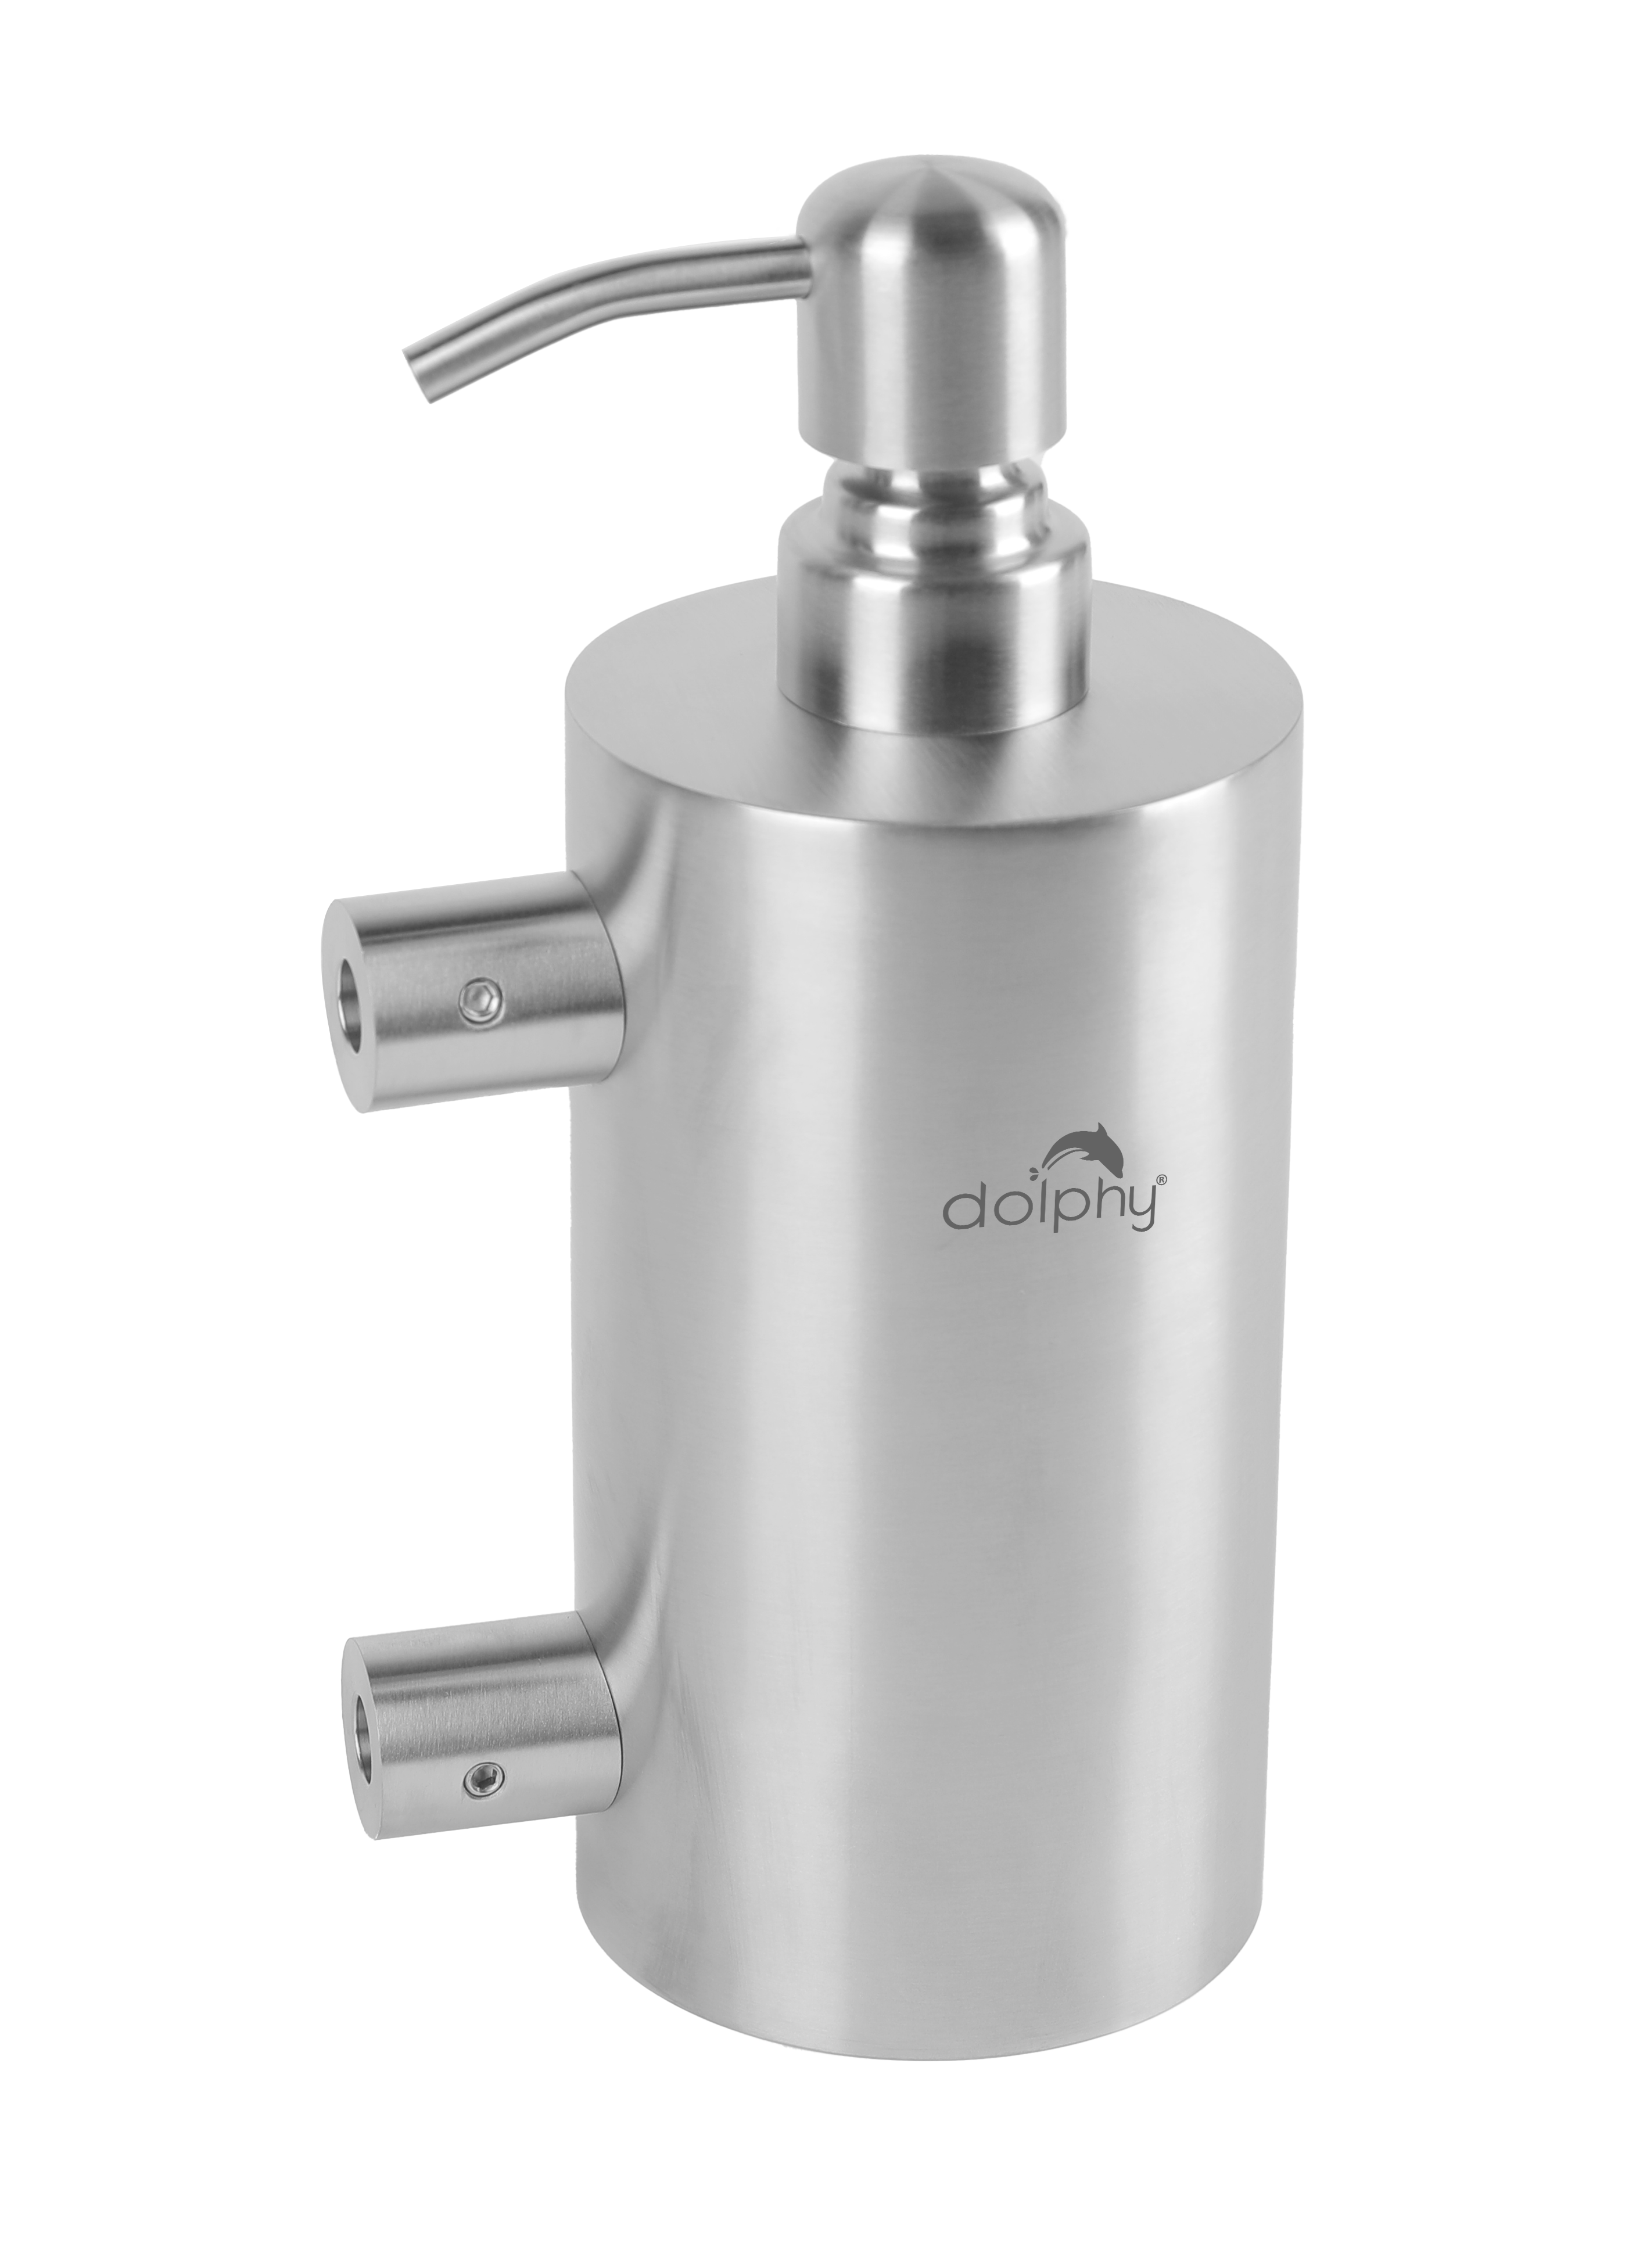 Stainless Steel Manual Soap Dispenser
